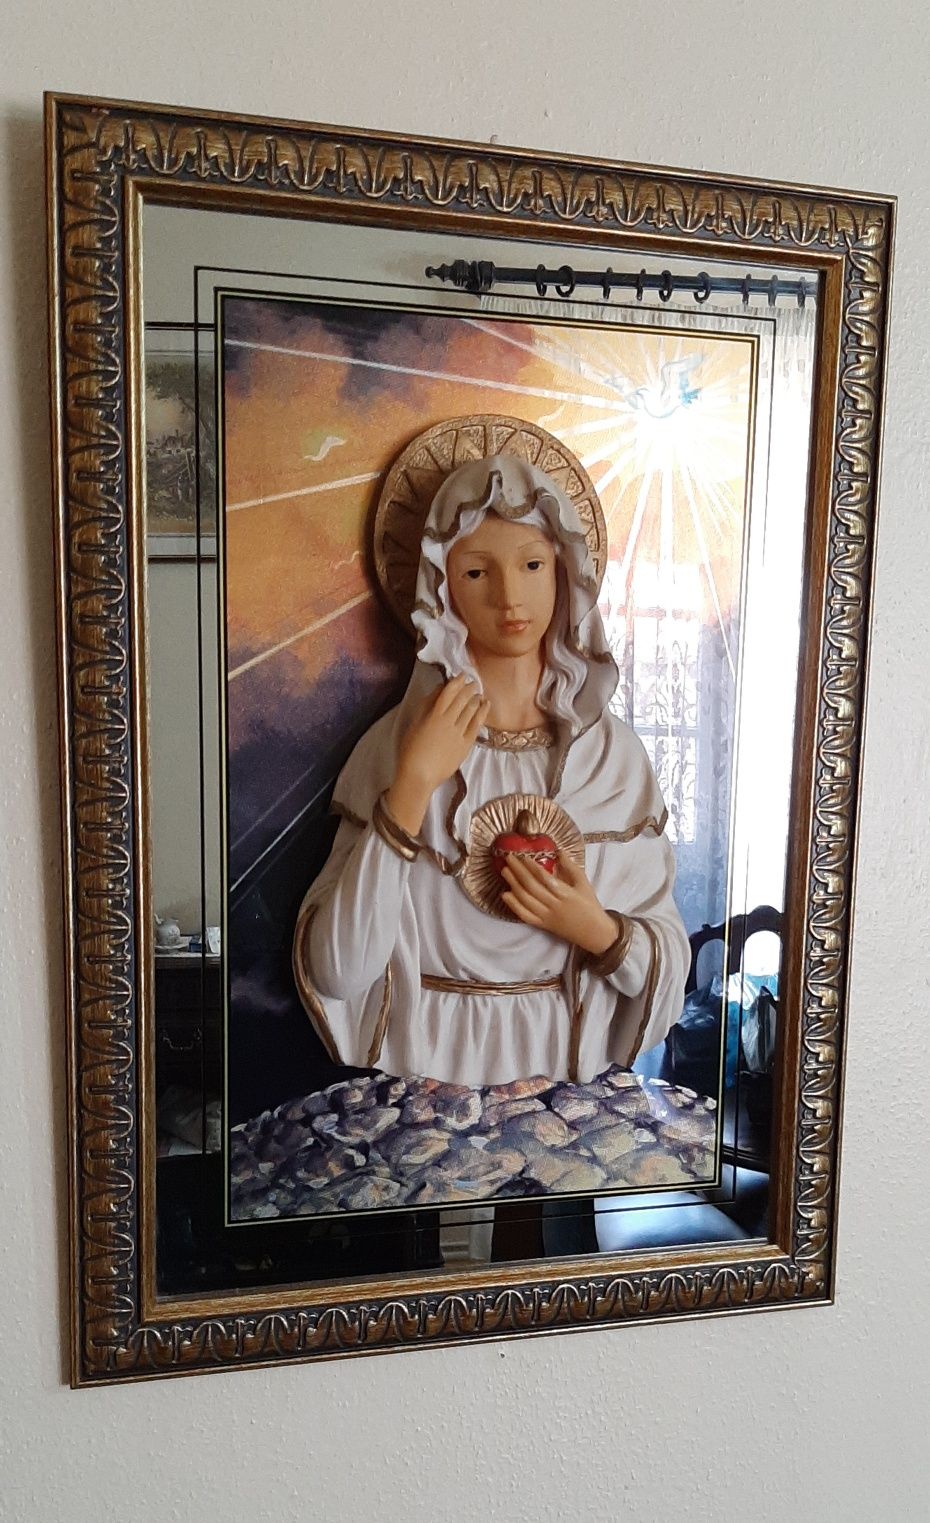 Quadro com imagem do Sagrado Coração de Maria, em relevo